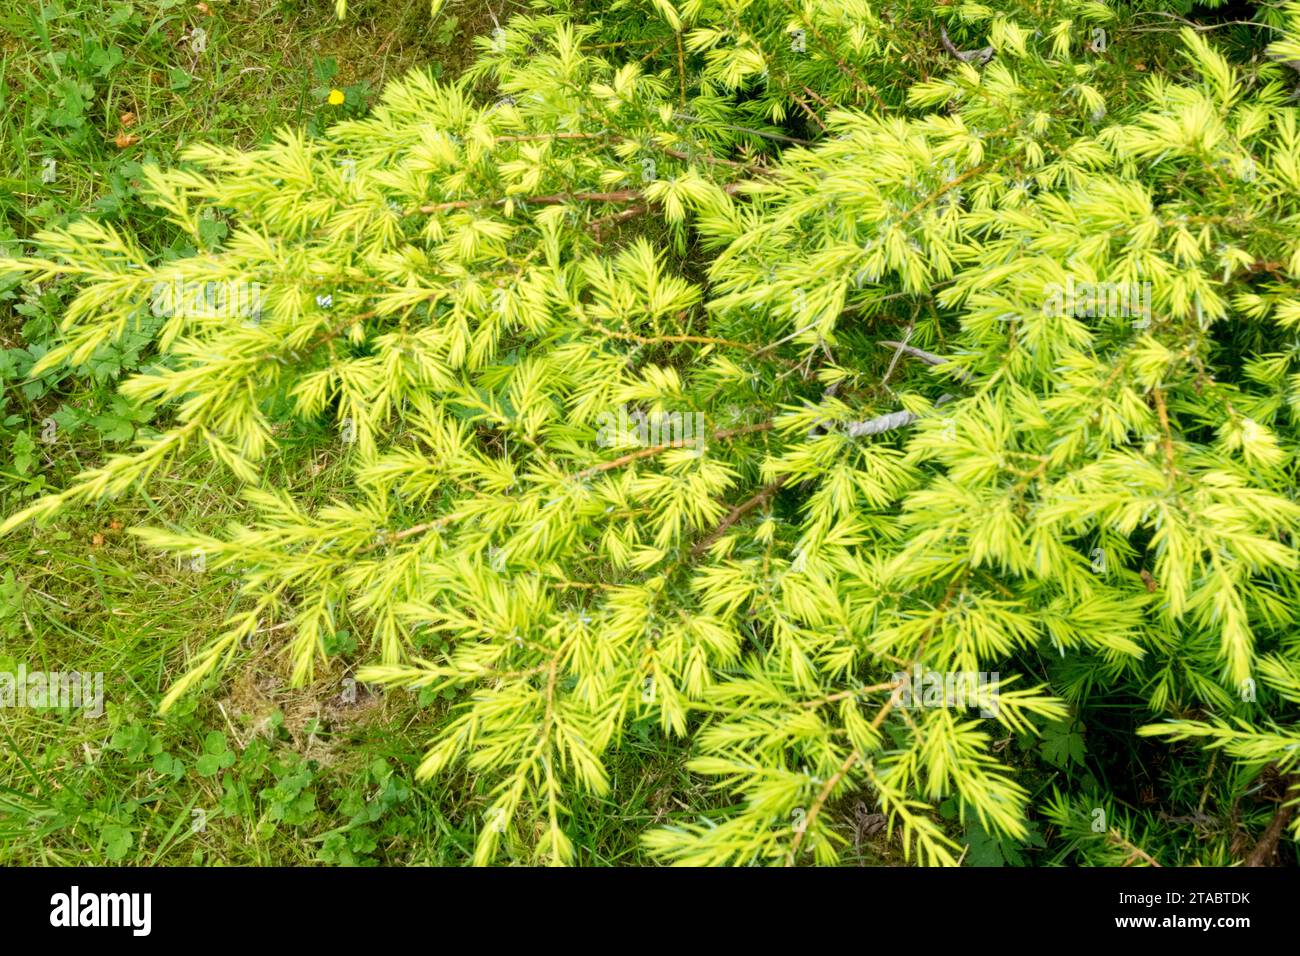 Golden Yellow, Common juniper, Juniperus communis "Depressa Aurea" Stock Photo